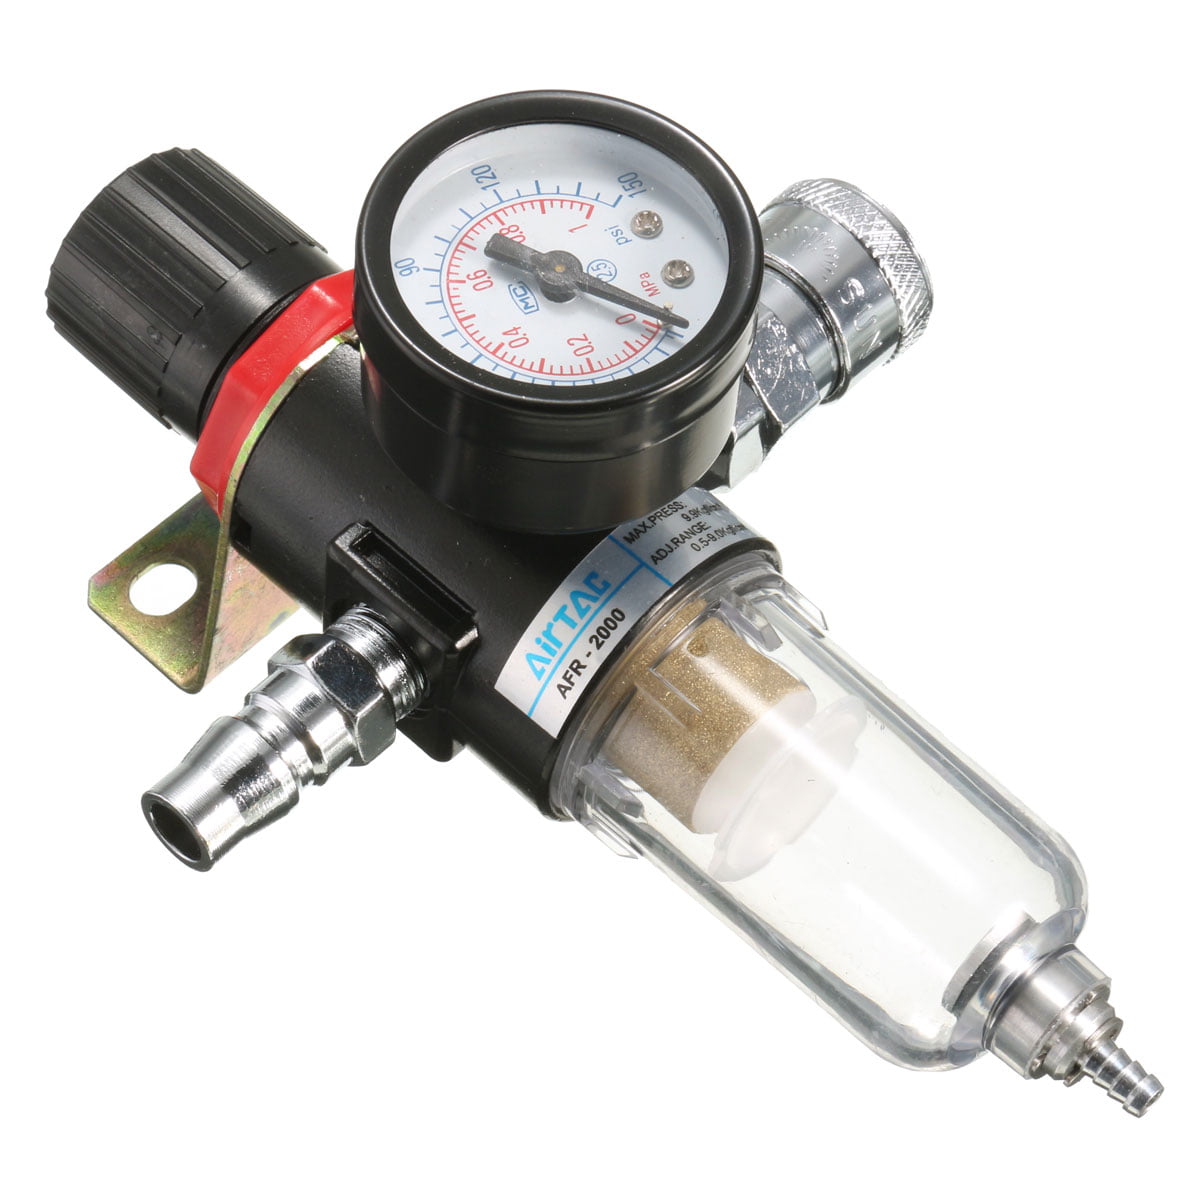 Mini Pressure Regulator Air Airbrush Filter with Air Gauge Water Trap Filter 